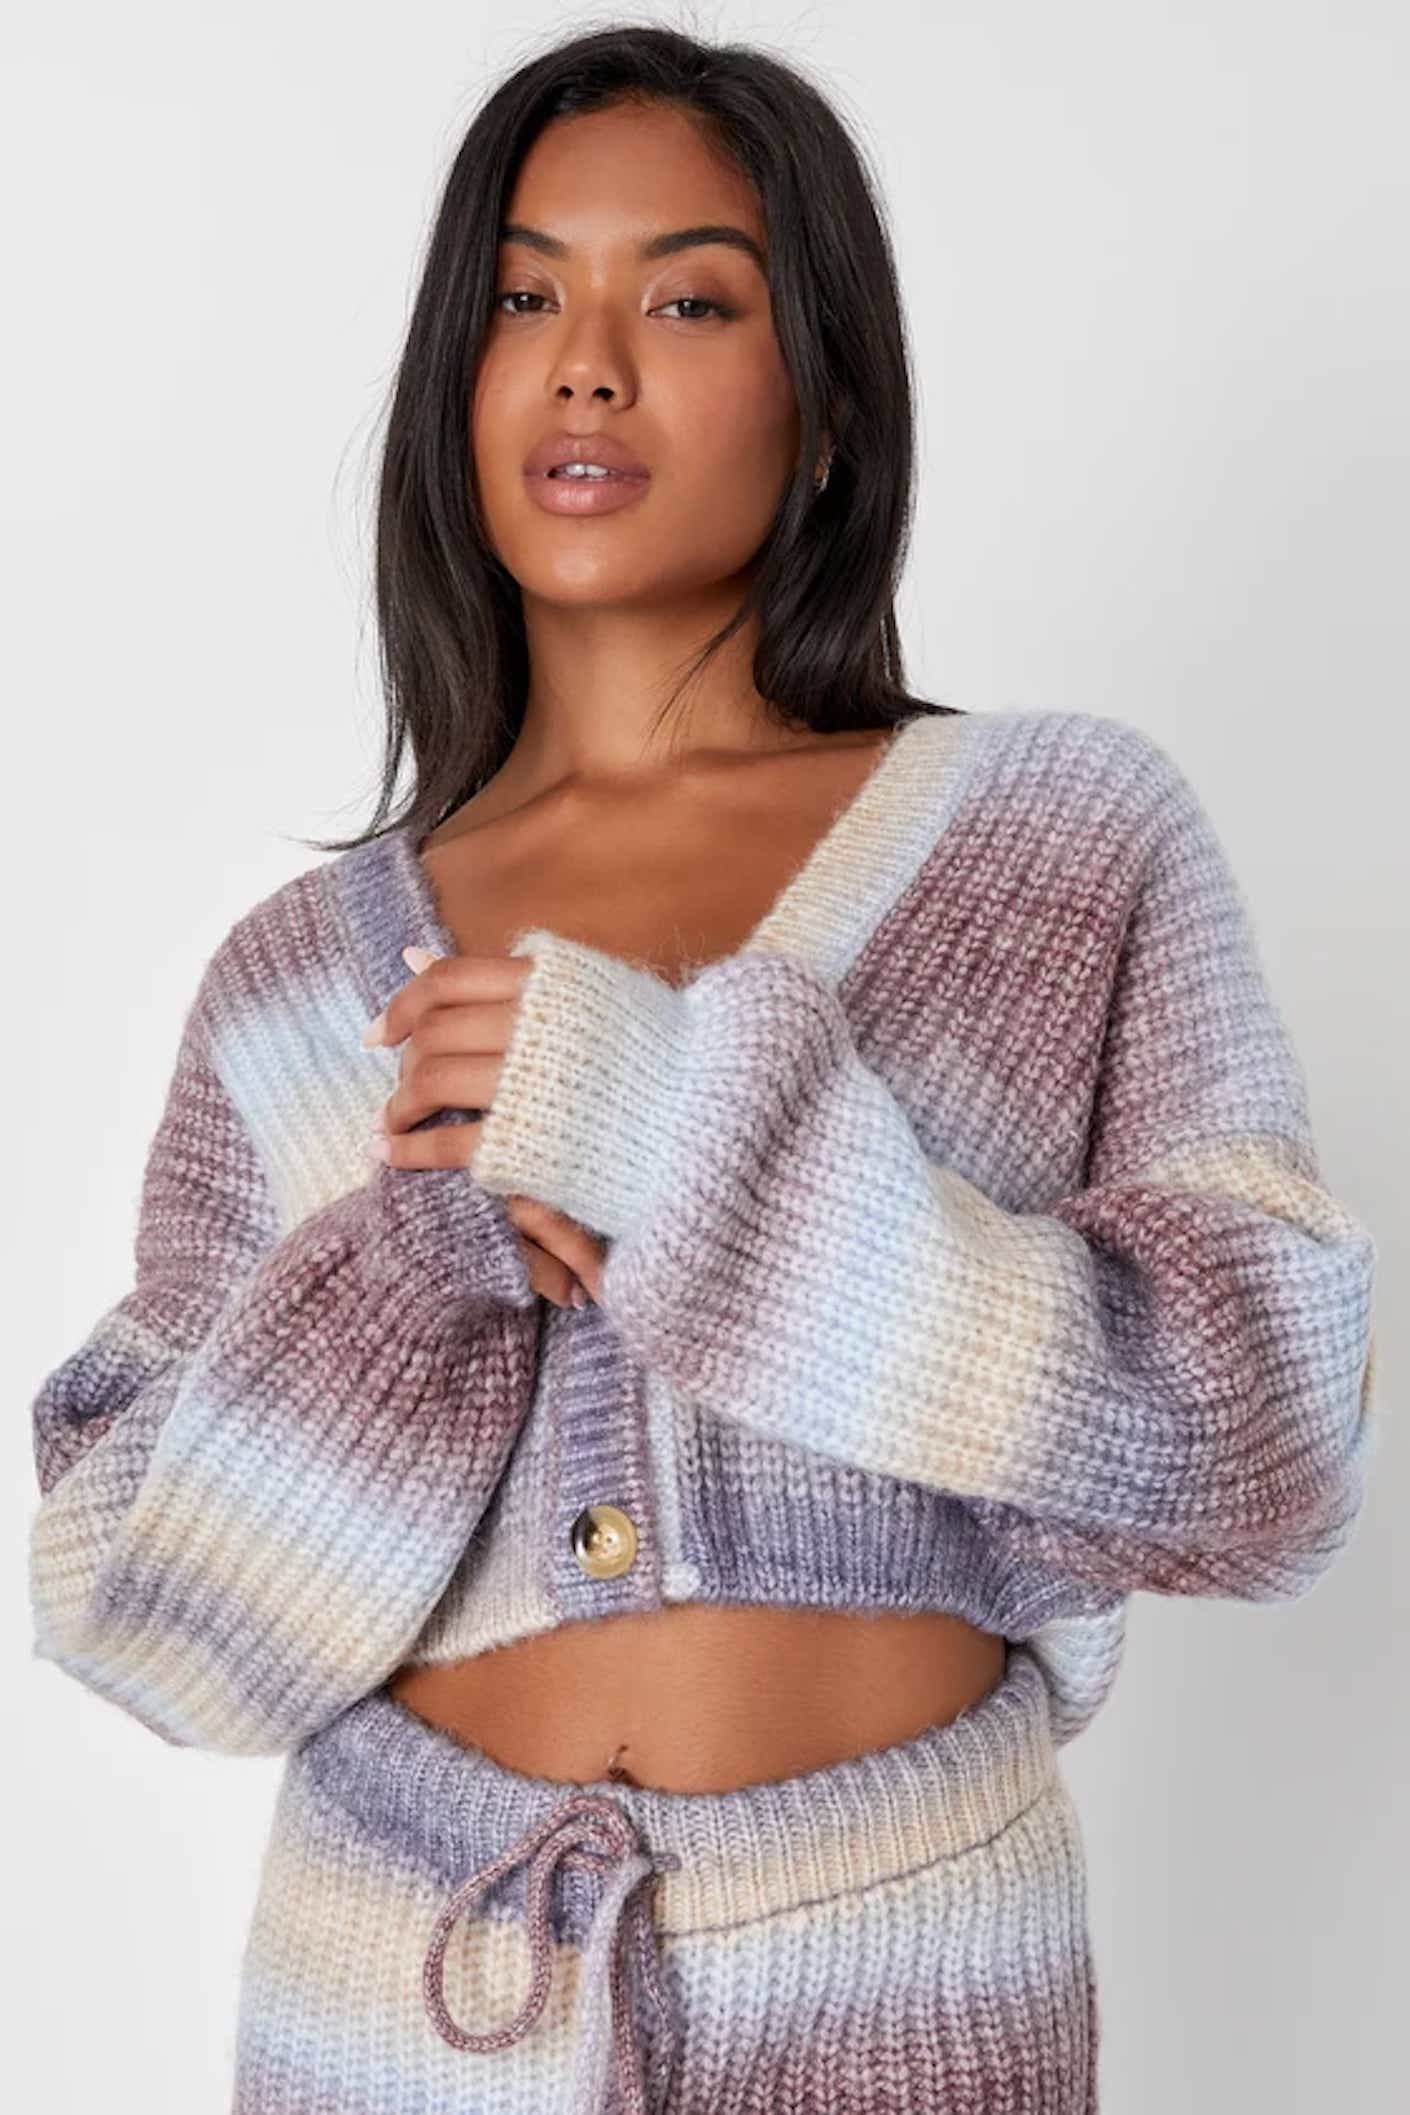 A fuzzy warm sweater